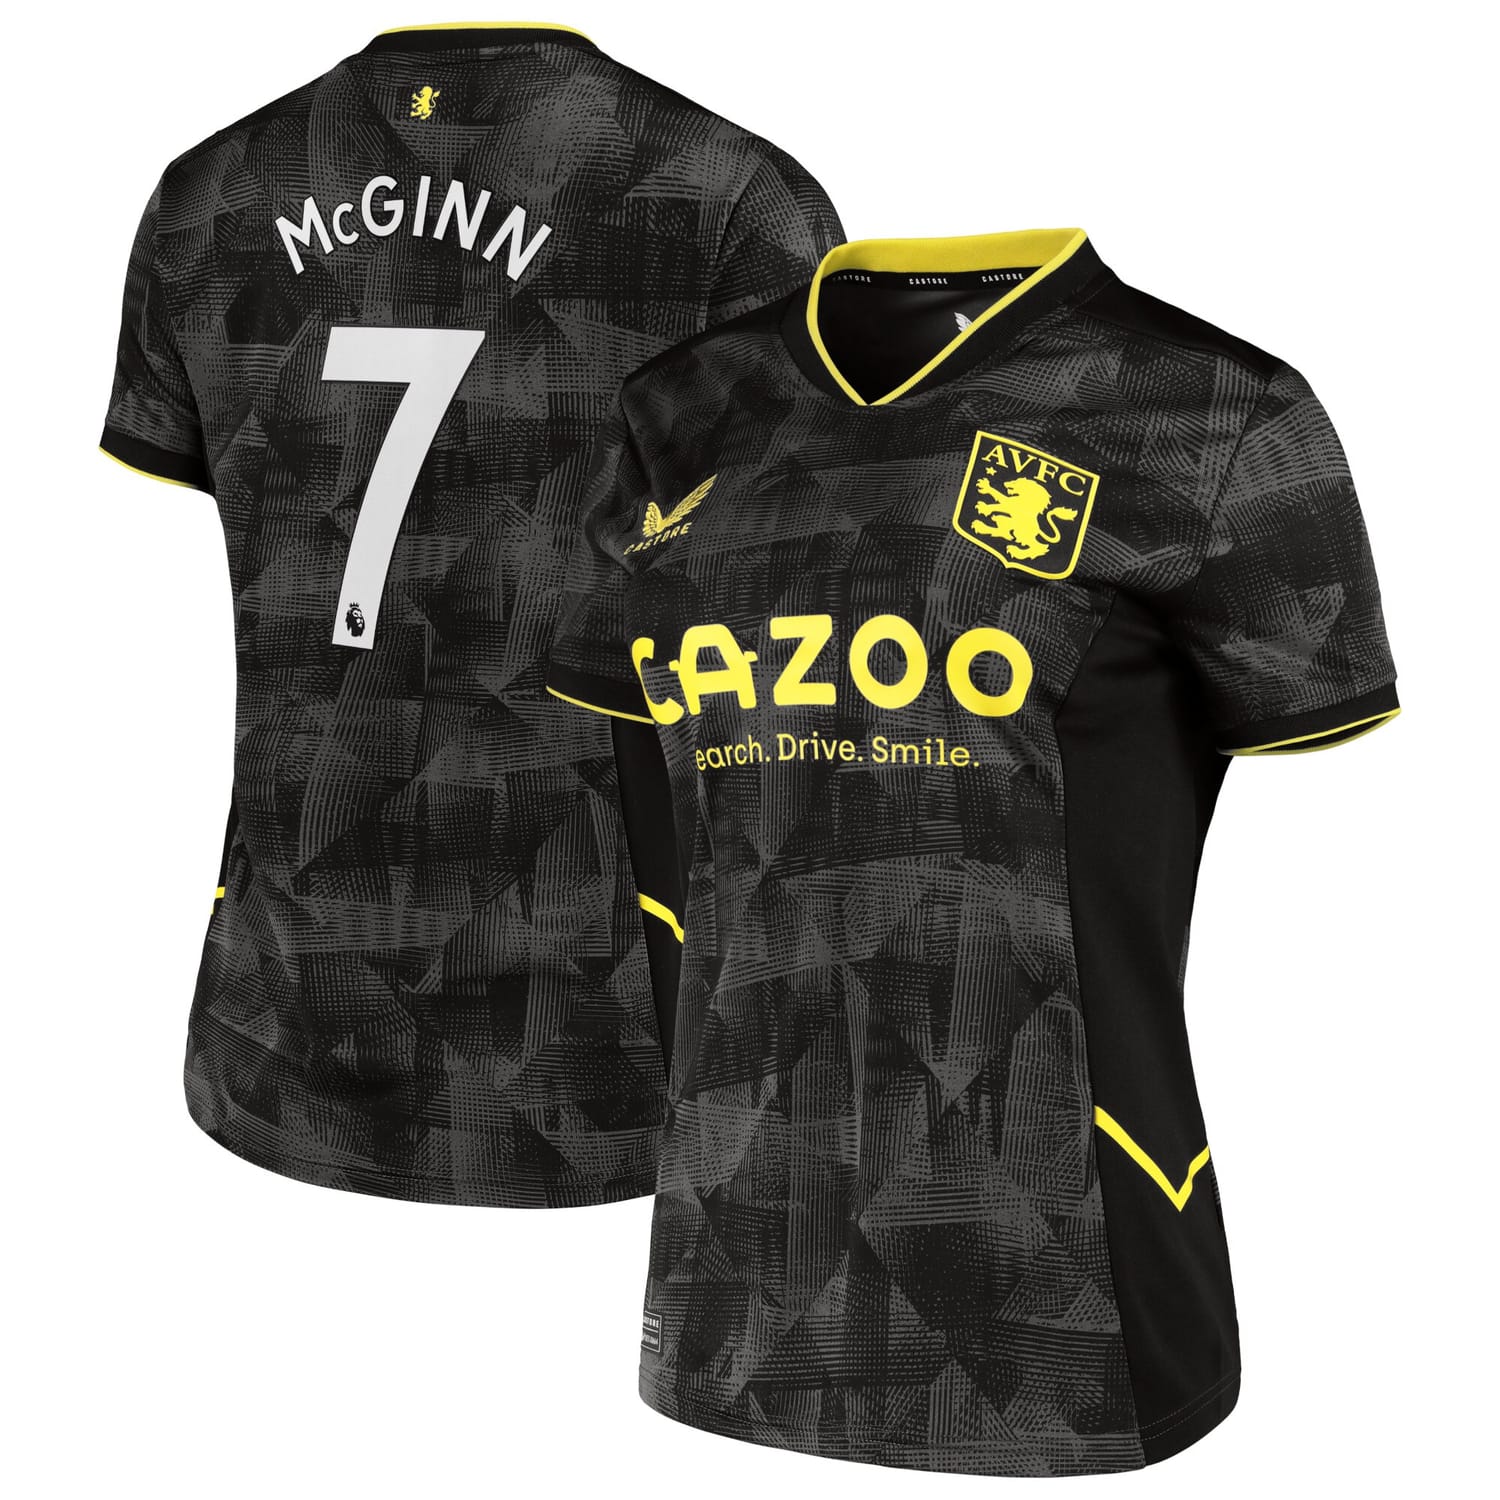 Premier League Aston Villa Third Jersey Shirt 2022-23 player John McGinn 7 printing for Women